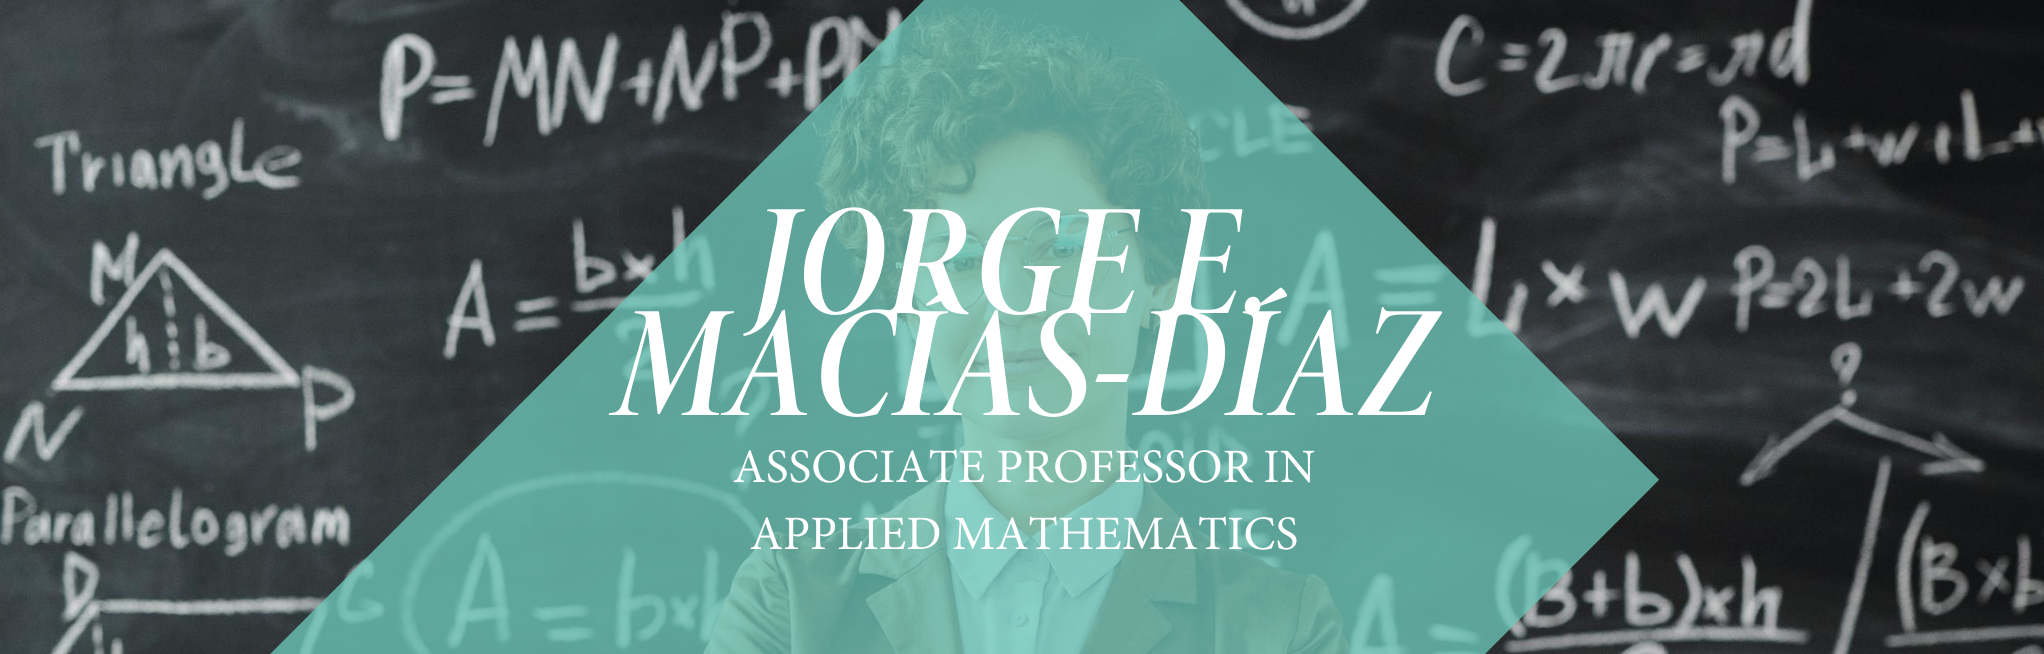 Jorge E. Macías-Díaz, Associate Professor in Applied Mathematics